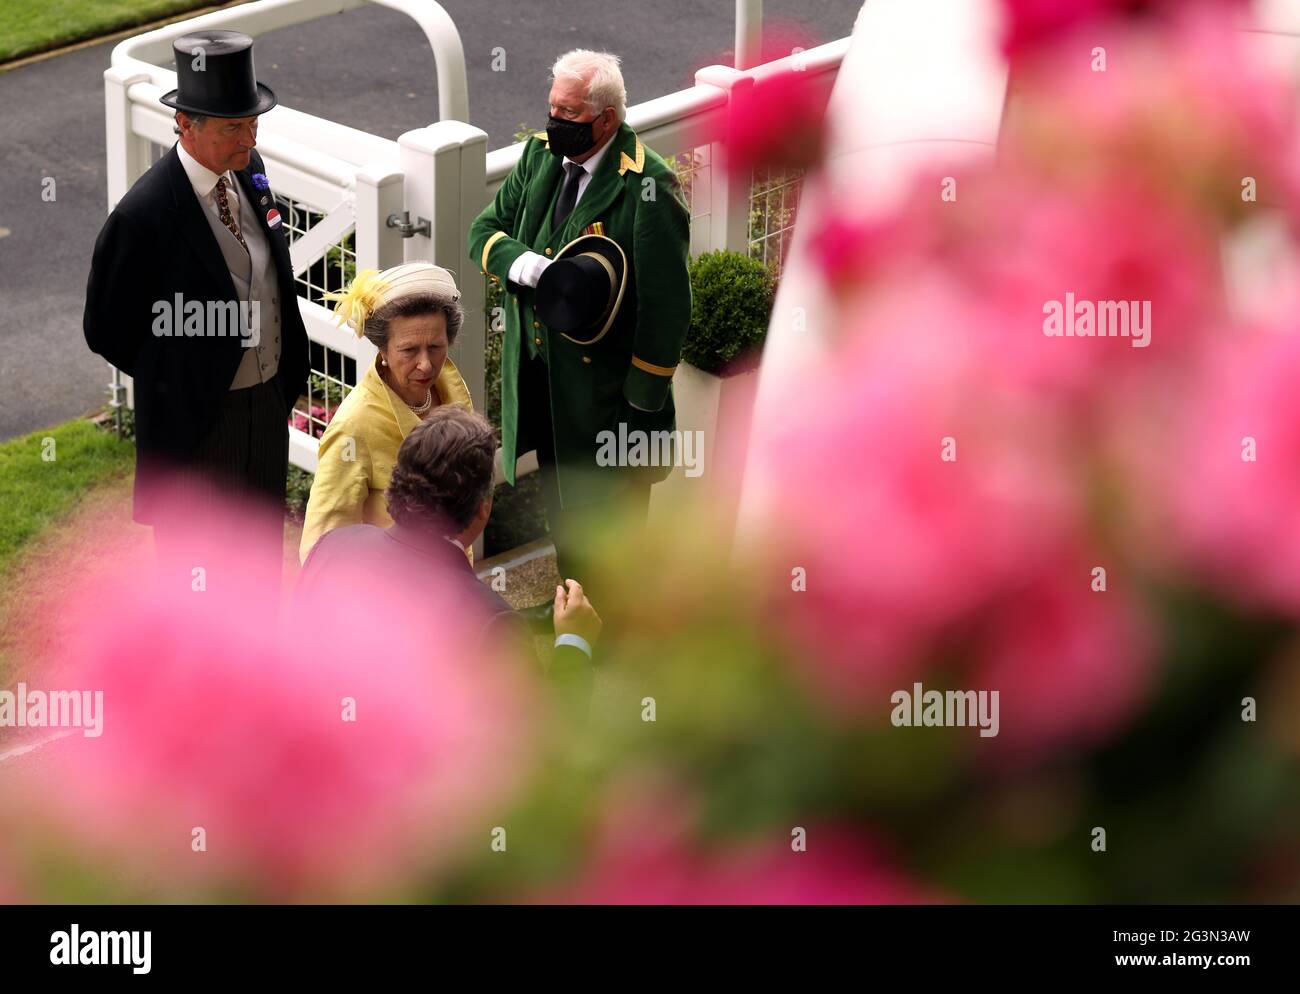 La principessa reale arriva per il terzo giorno di Ascot reale all'Ippodromo di Ascot. Data immagine: Giovedì 17 giugno 2021. Foto Stock